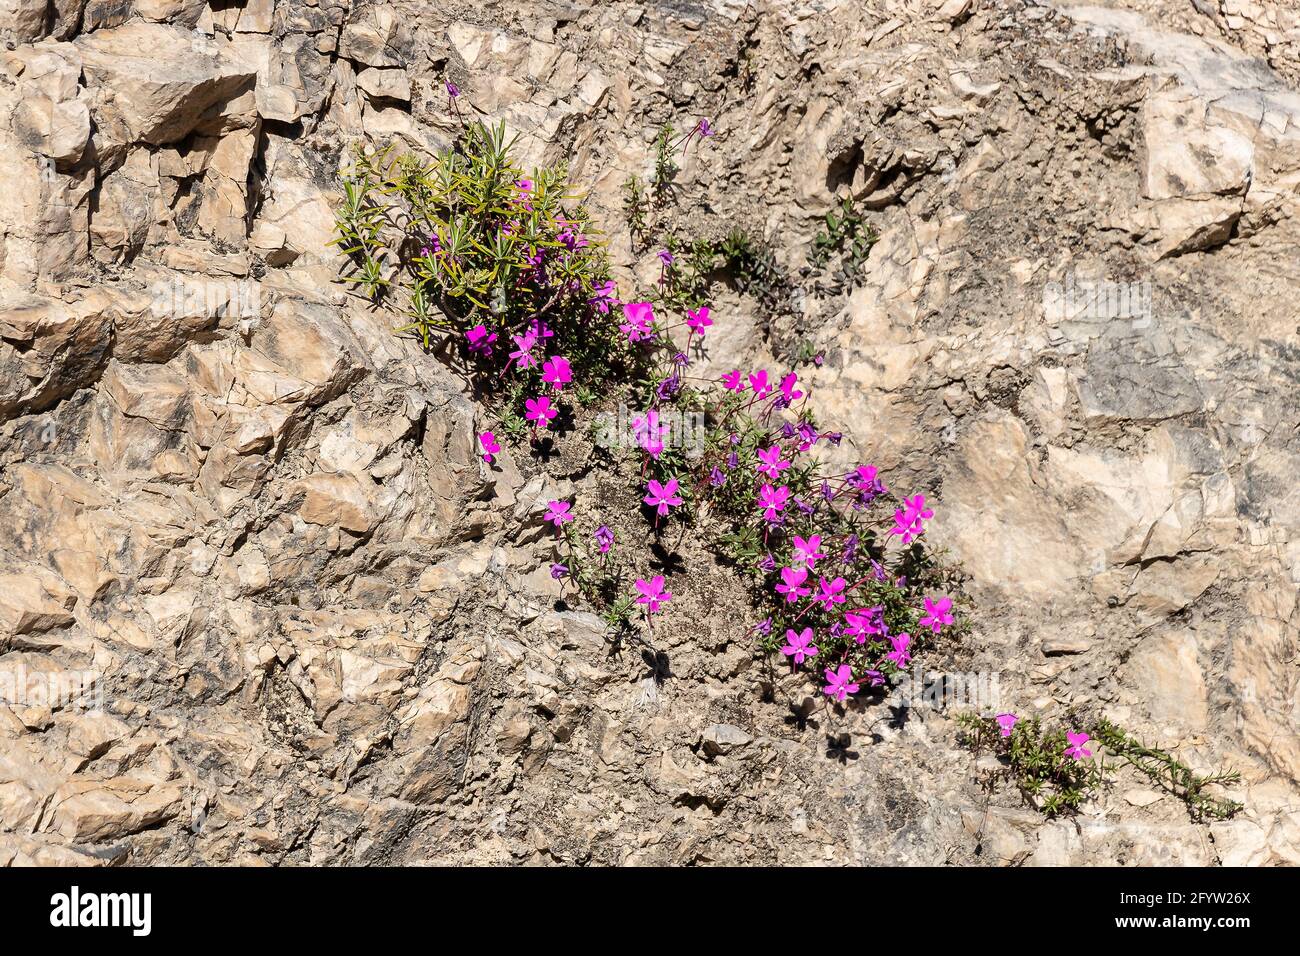 La Violeta de Cazorla o Viola cazorlensis è una specie endemica della Sierra de Cazorla, Segura e Las Villas, di natura rupicolosa, fiorisce i. Foto Stock